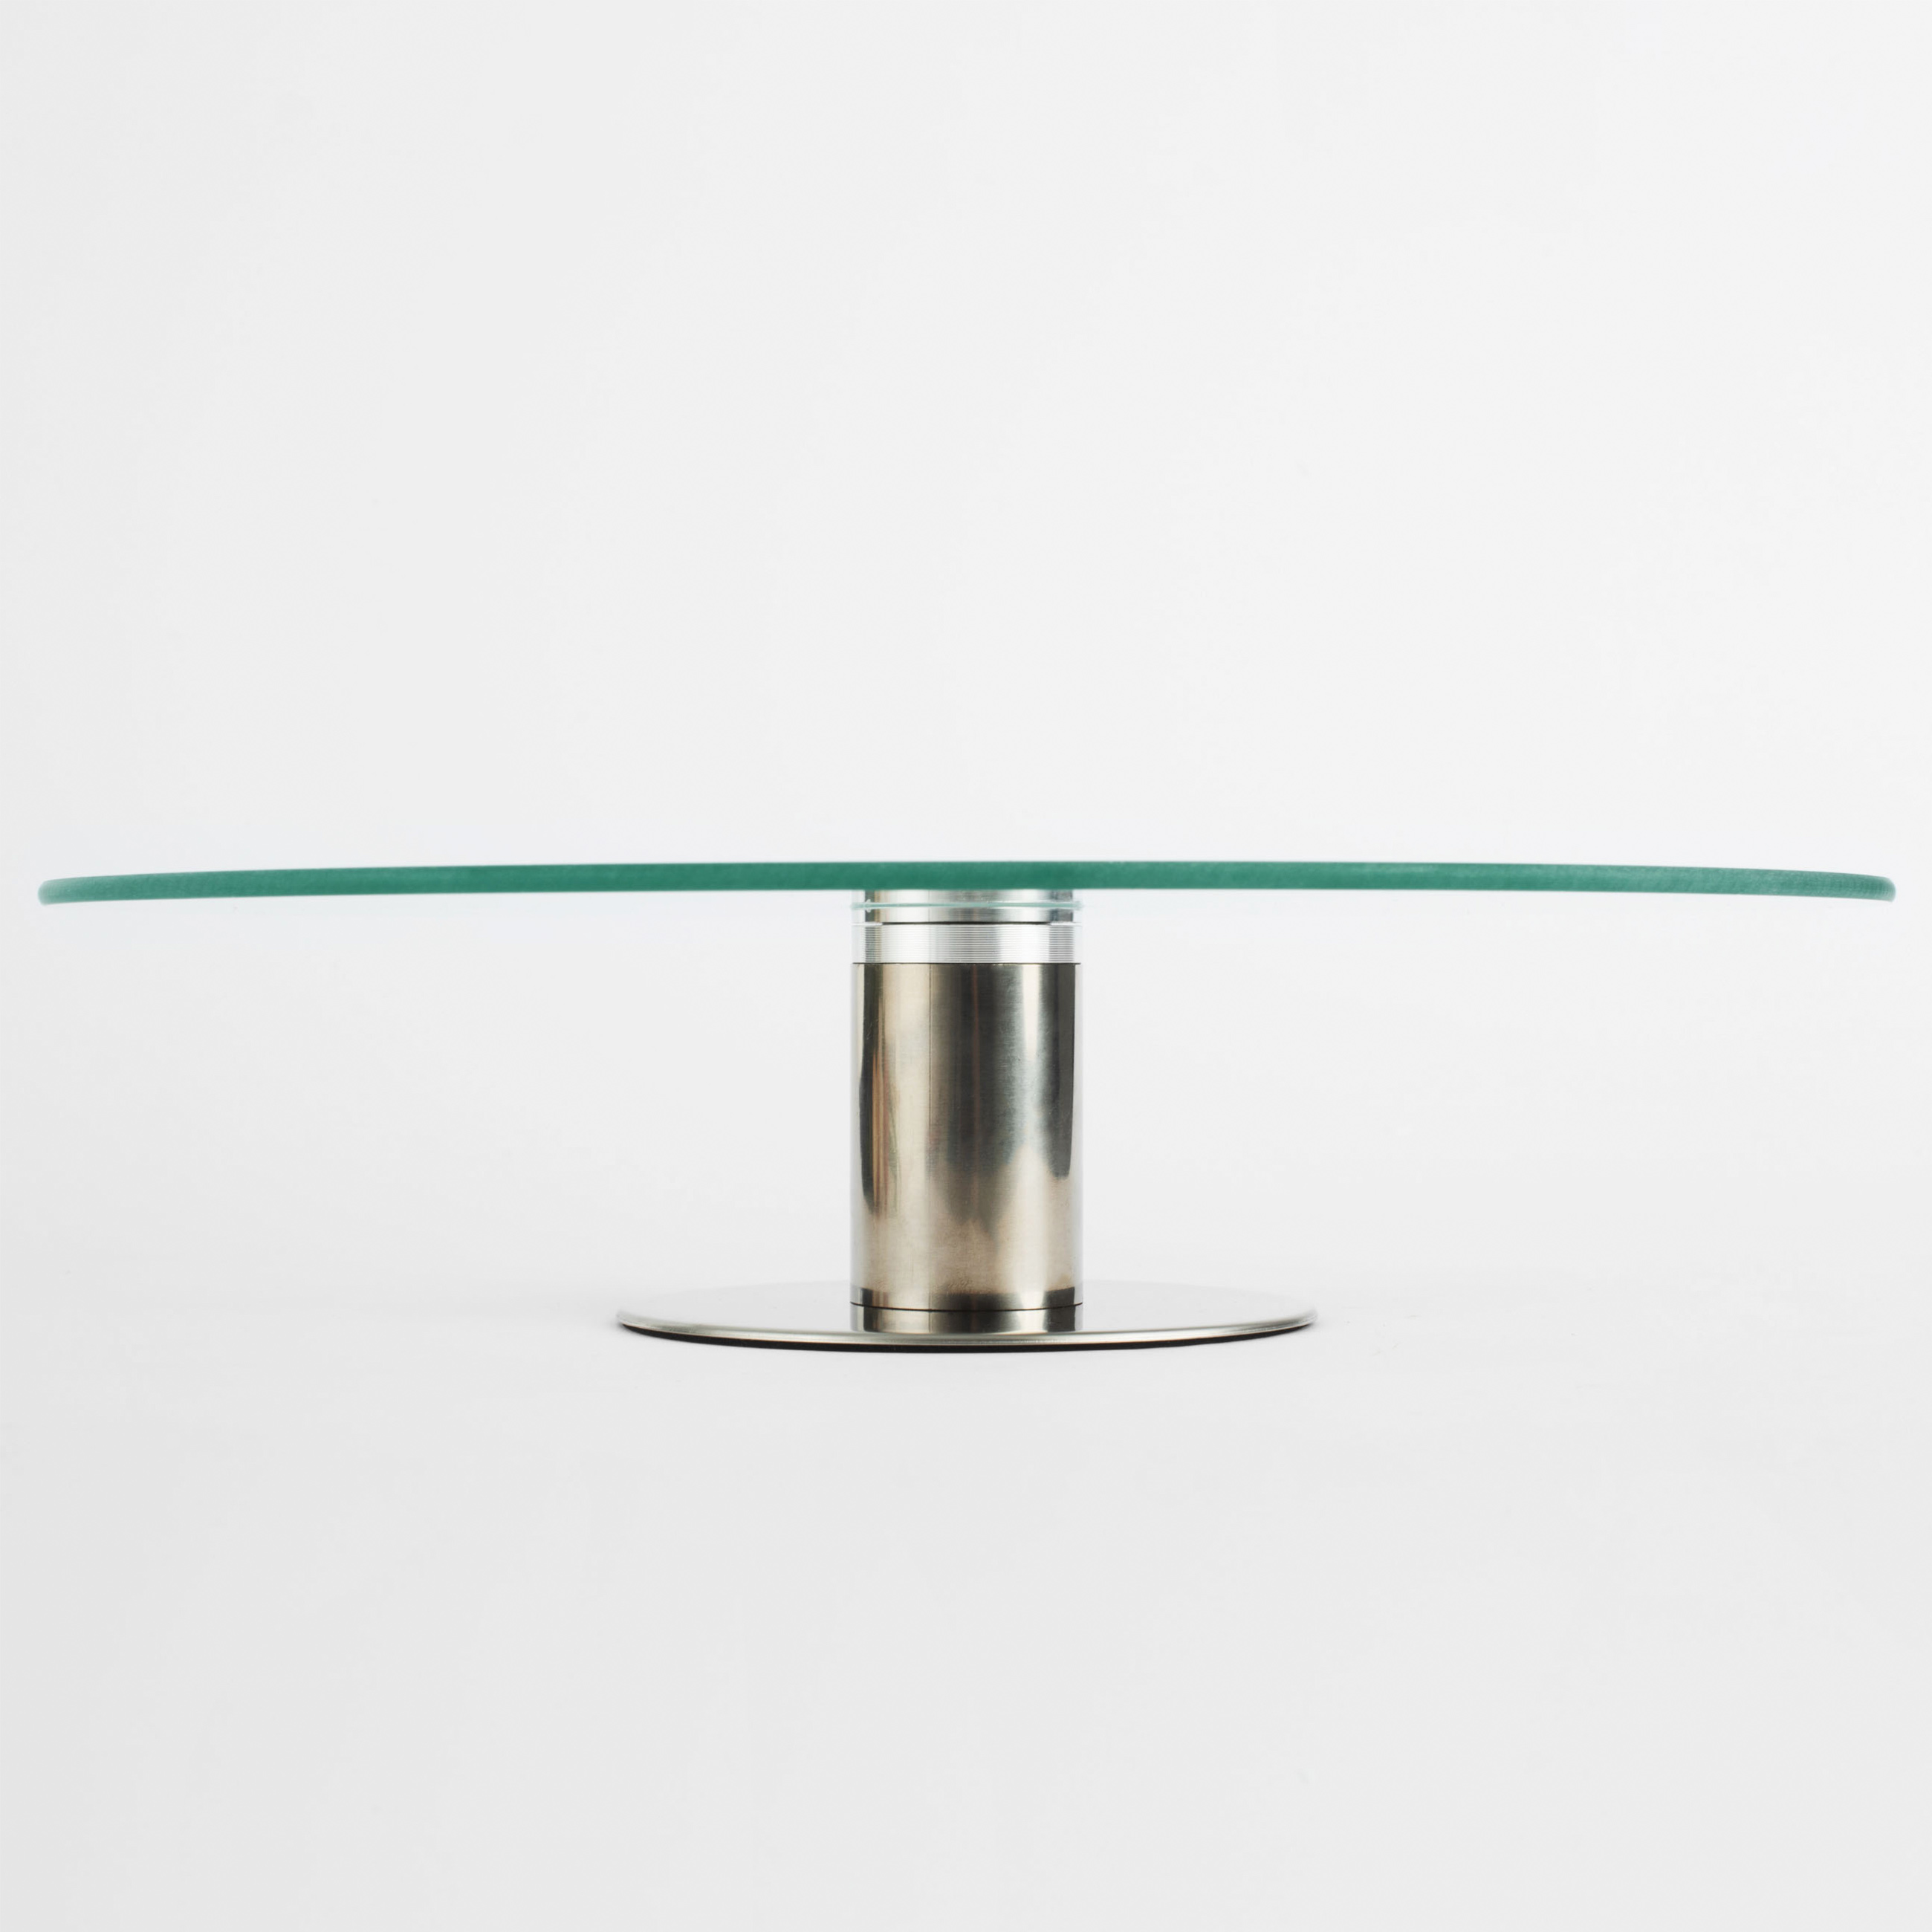 Dish on a leg, 30x7 cm, glass / steel, Classic изображение № 4